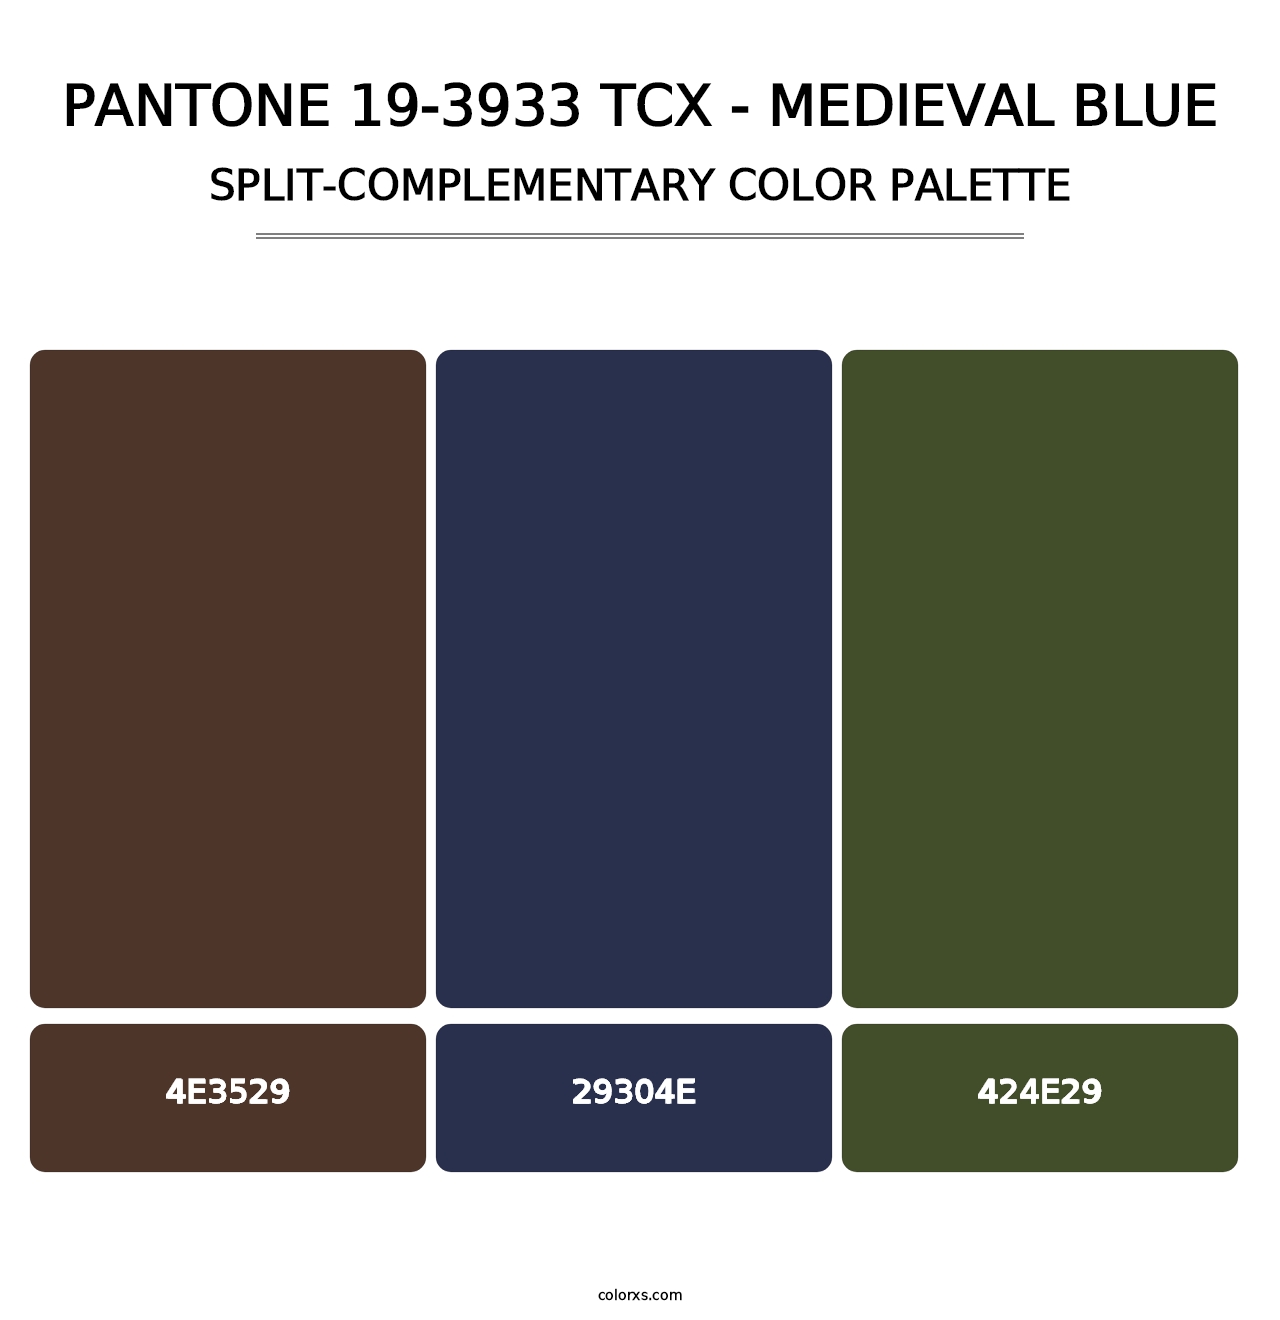 PANTONE 19-3933 TCX - Medieval Blue - Split-Complementary Color Palette